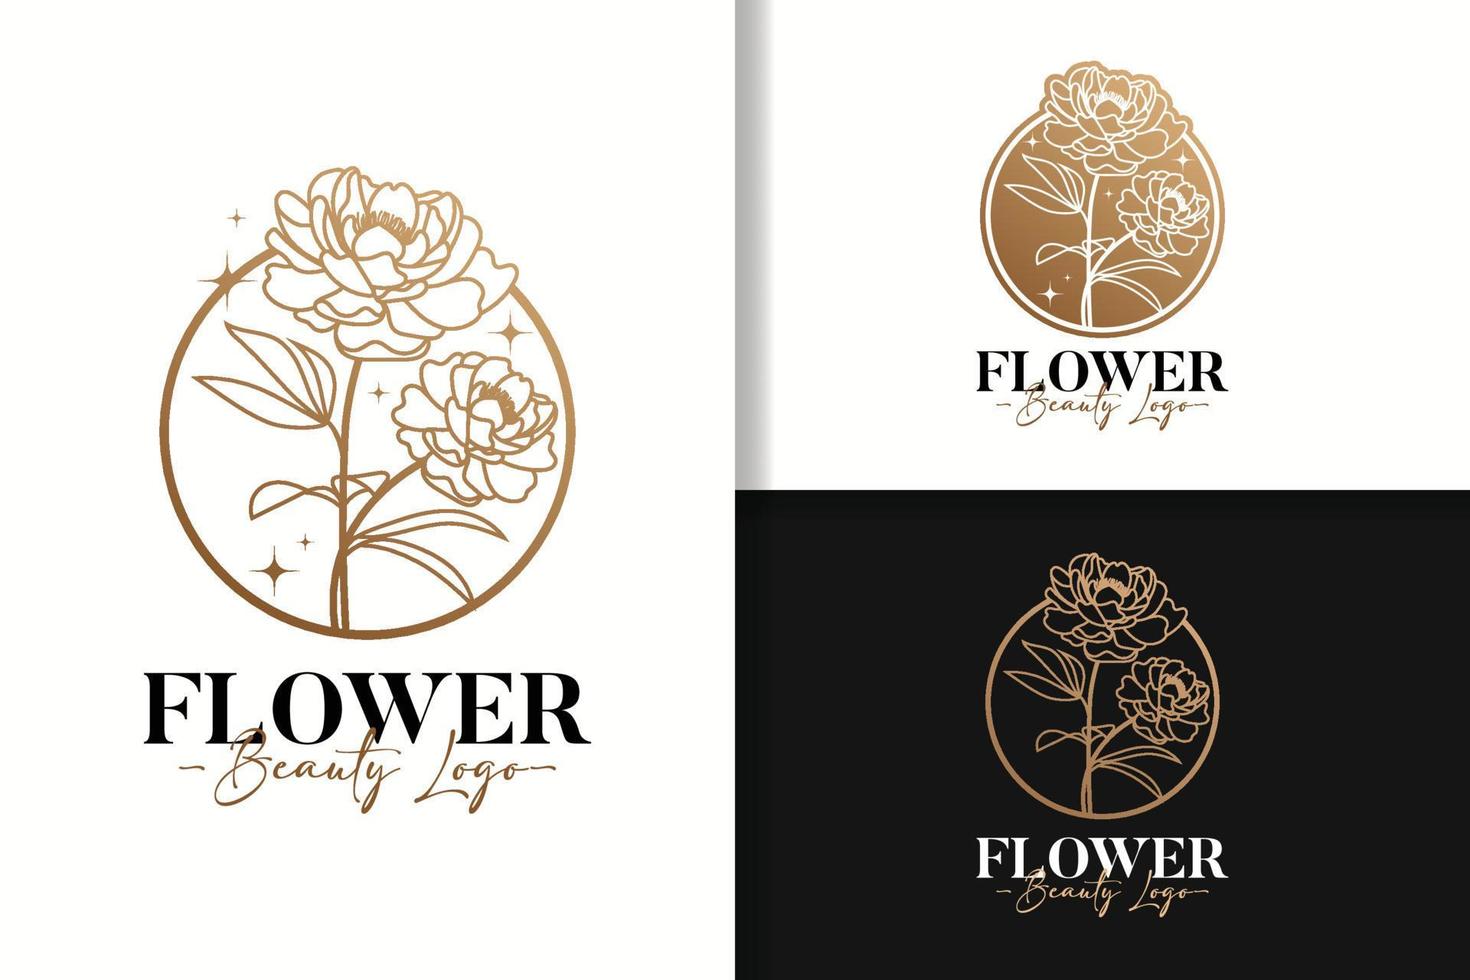 Flower Beauty Logo Design Template vector